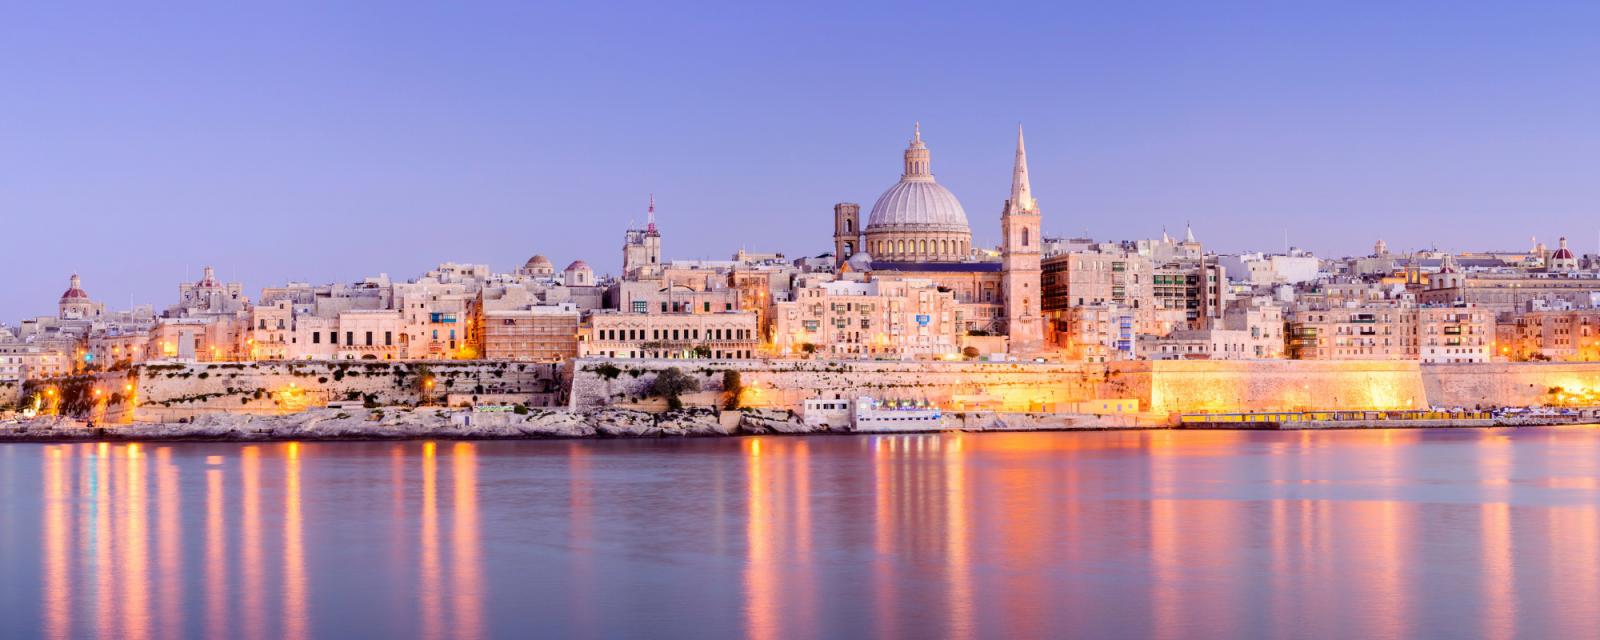 Tips voor een vakantie naar Malta 